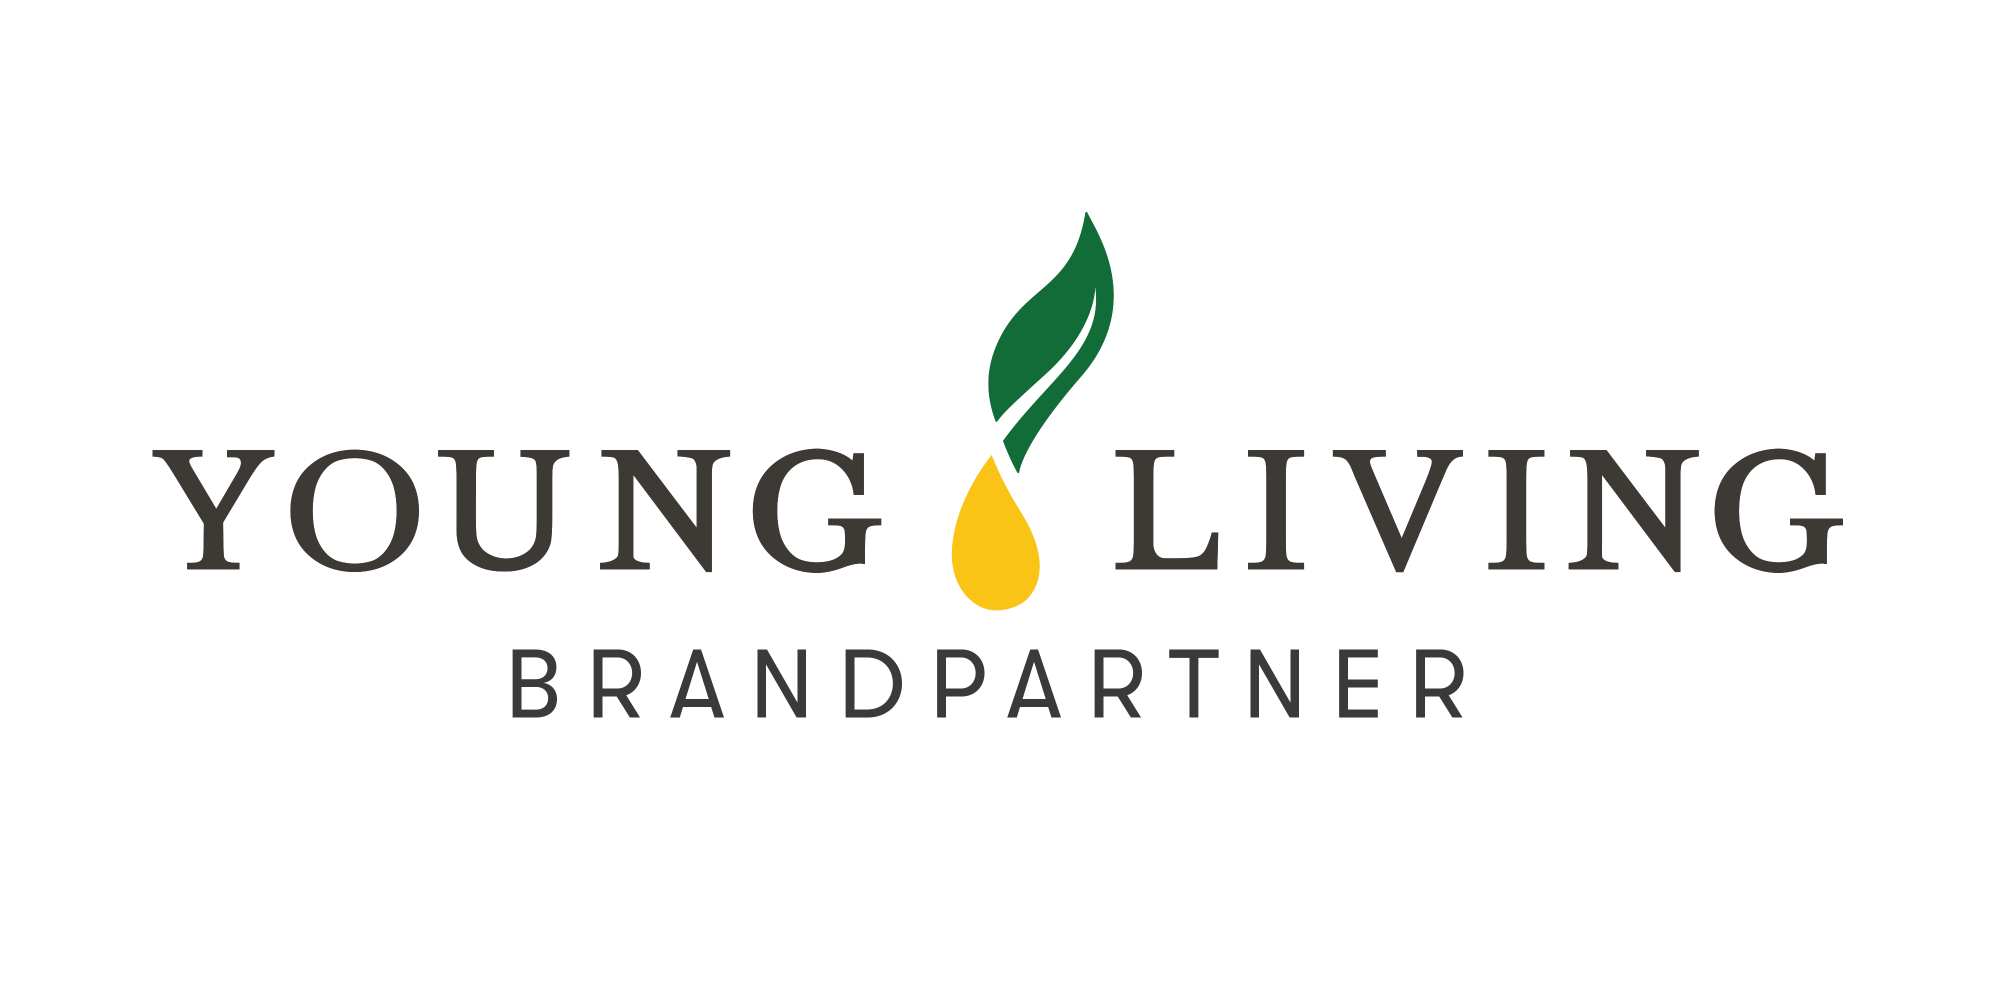 yl_brand_partner_logo-nl